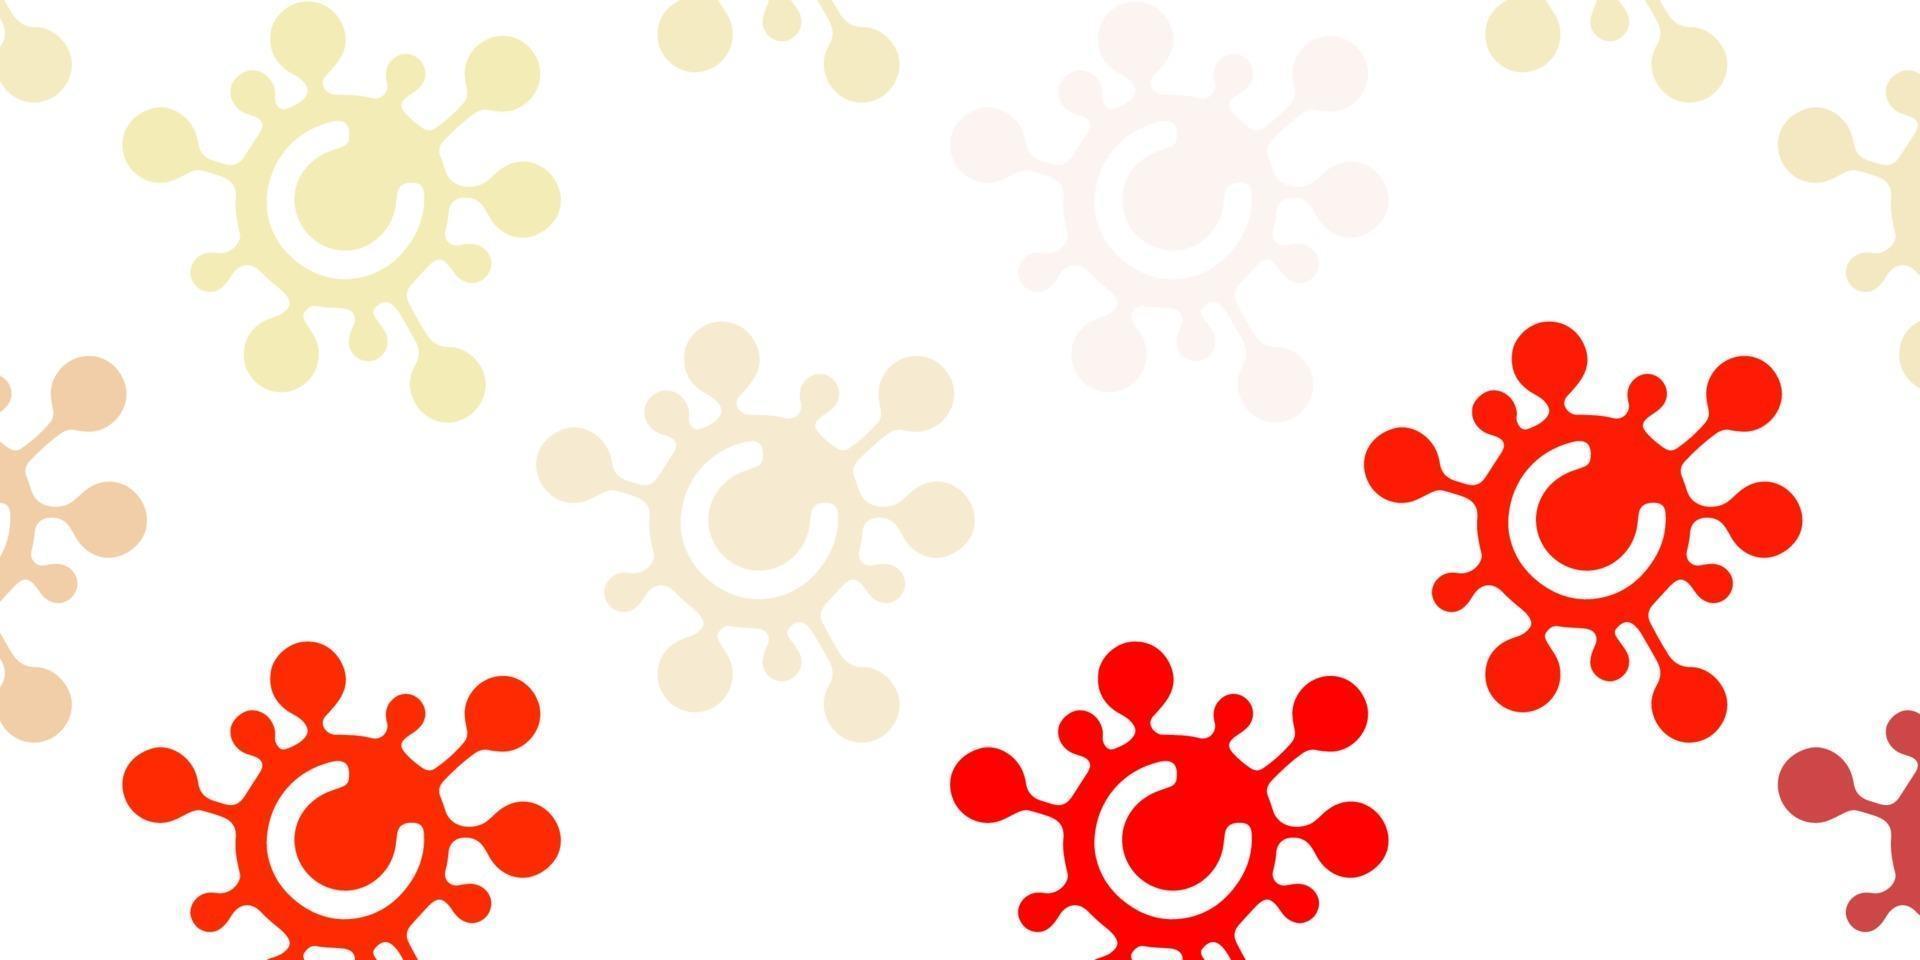 textura vector vermelho, amarelo claro com símbolos de doença.